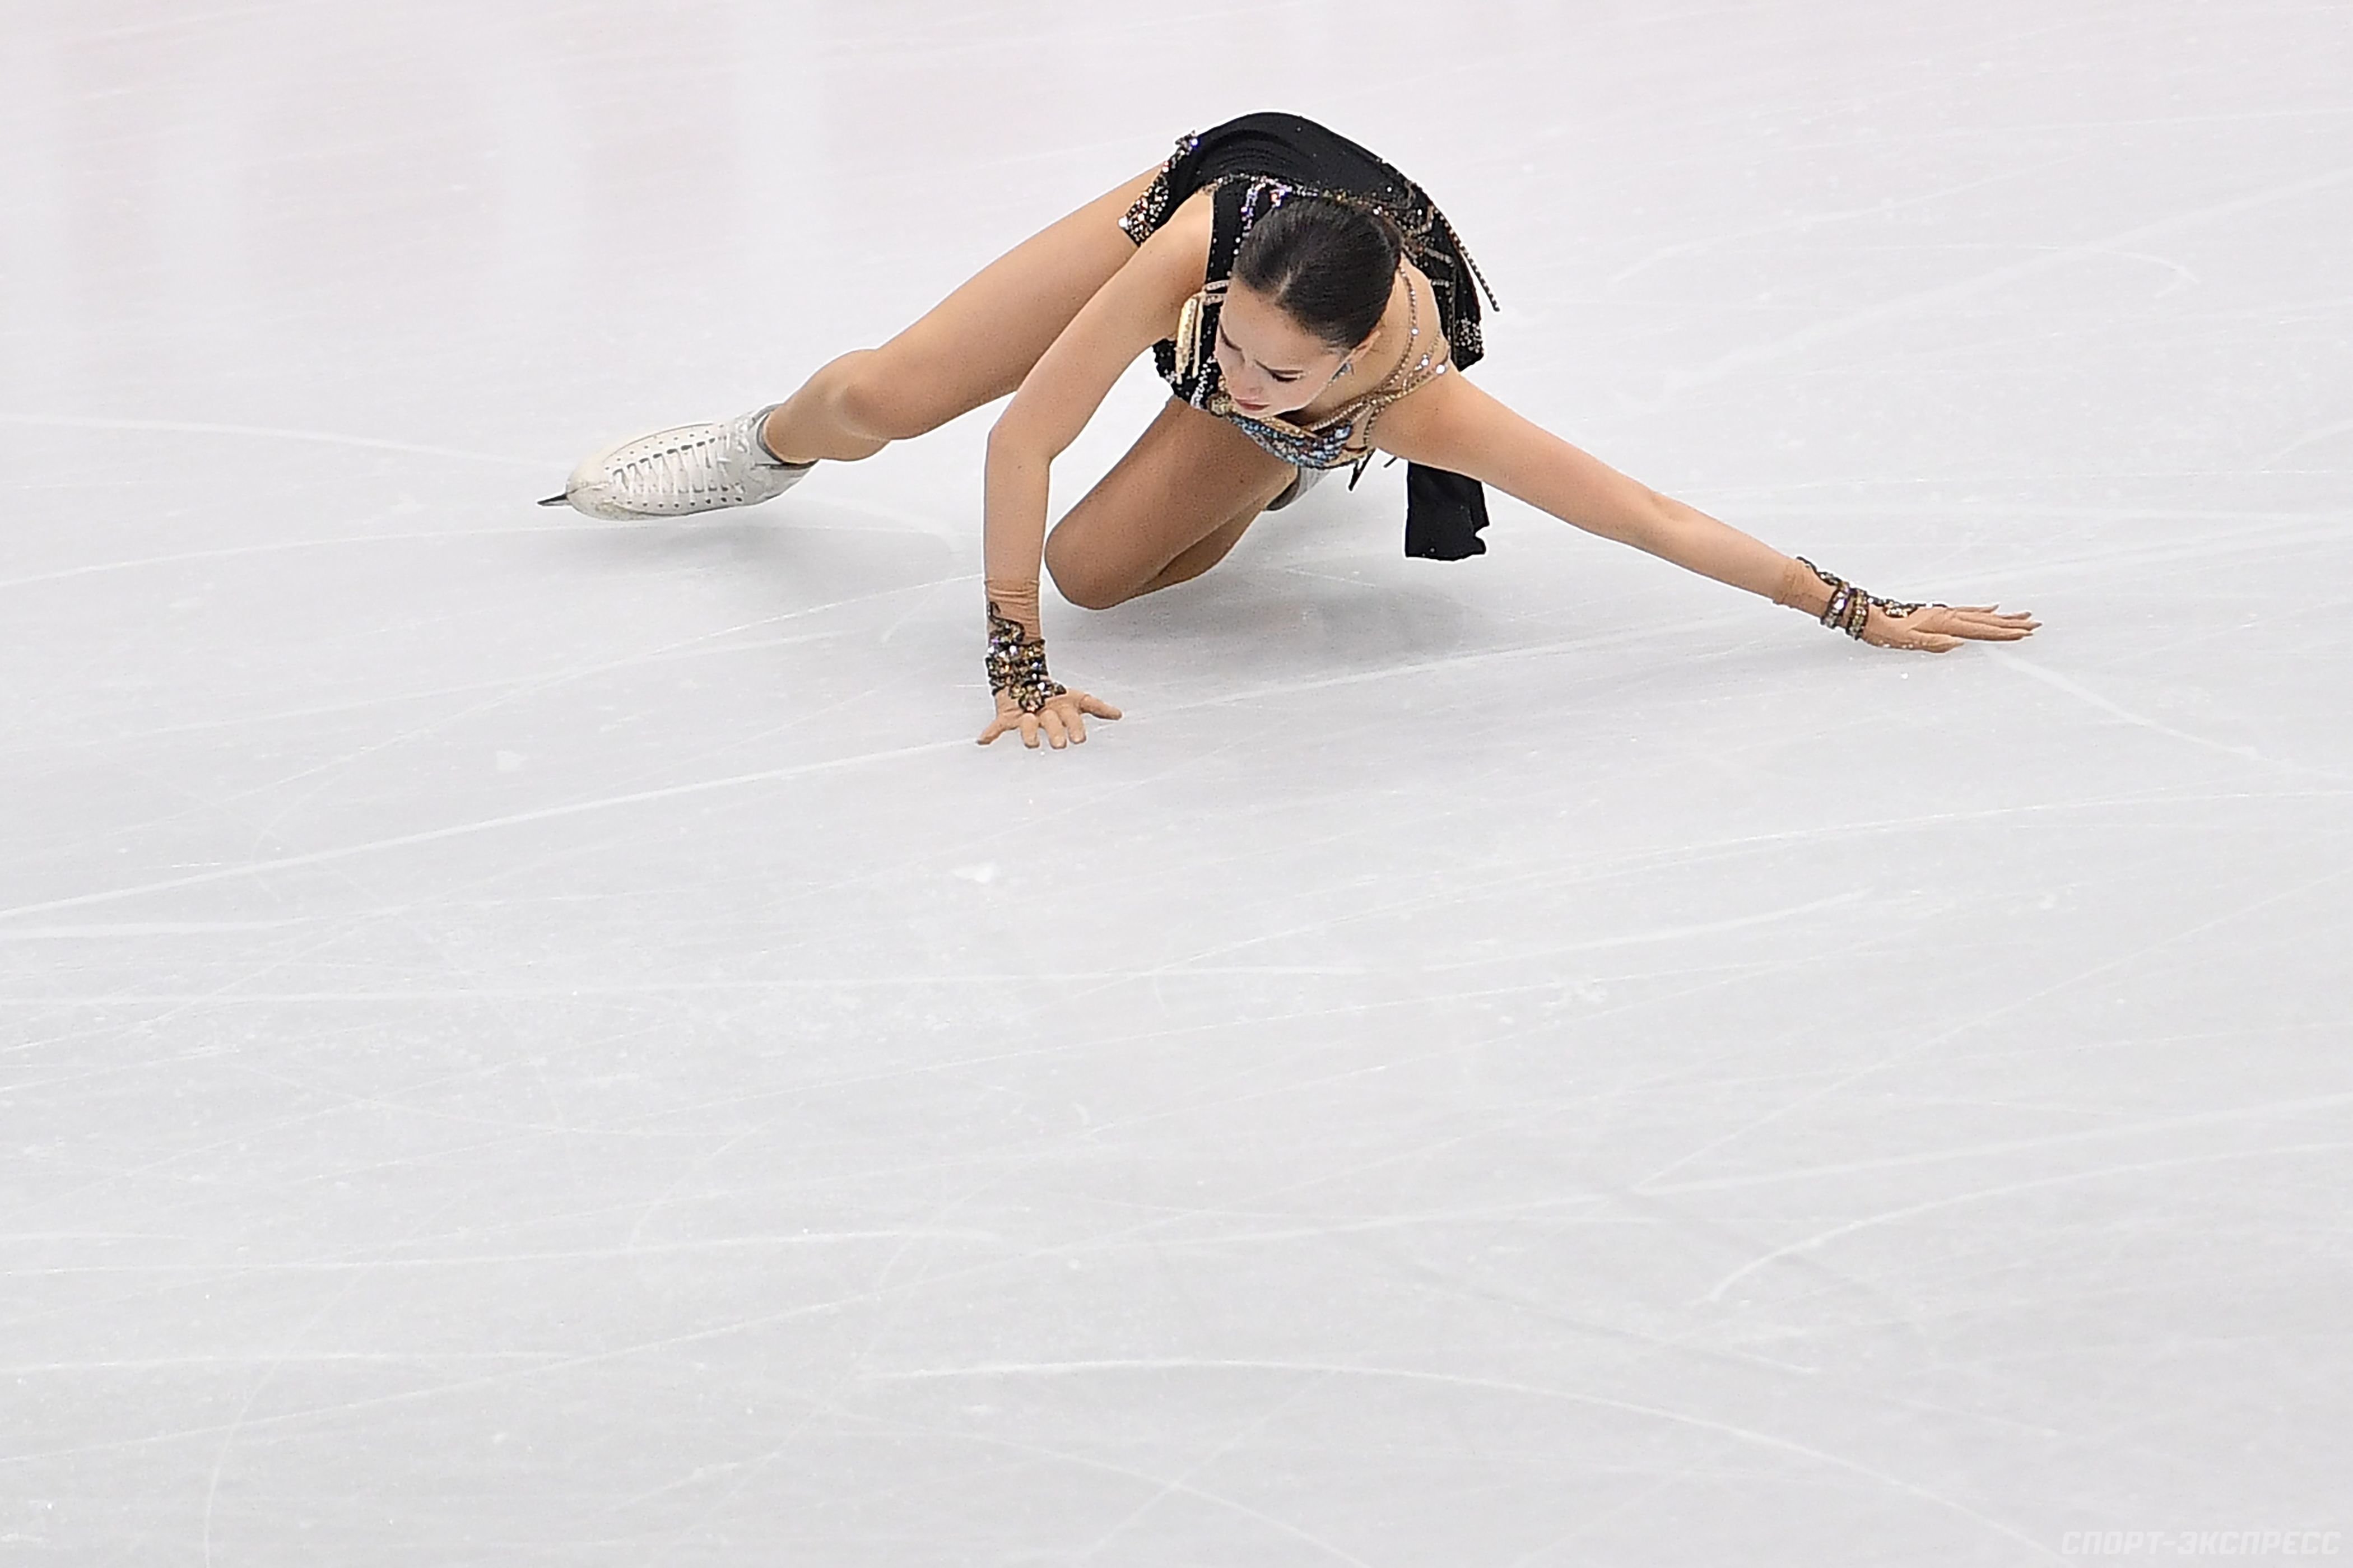 ISU Grand Prix of Figure Skating Final (Senior & Junior). Dec 05 - Dec 08, 2019.  Torino /ITA  - Страница 29 Origin